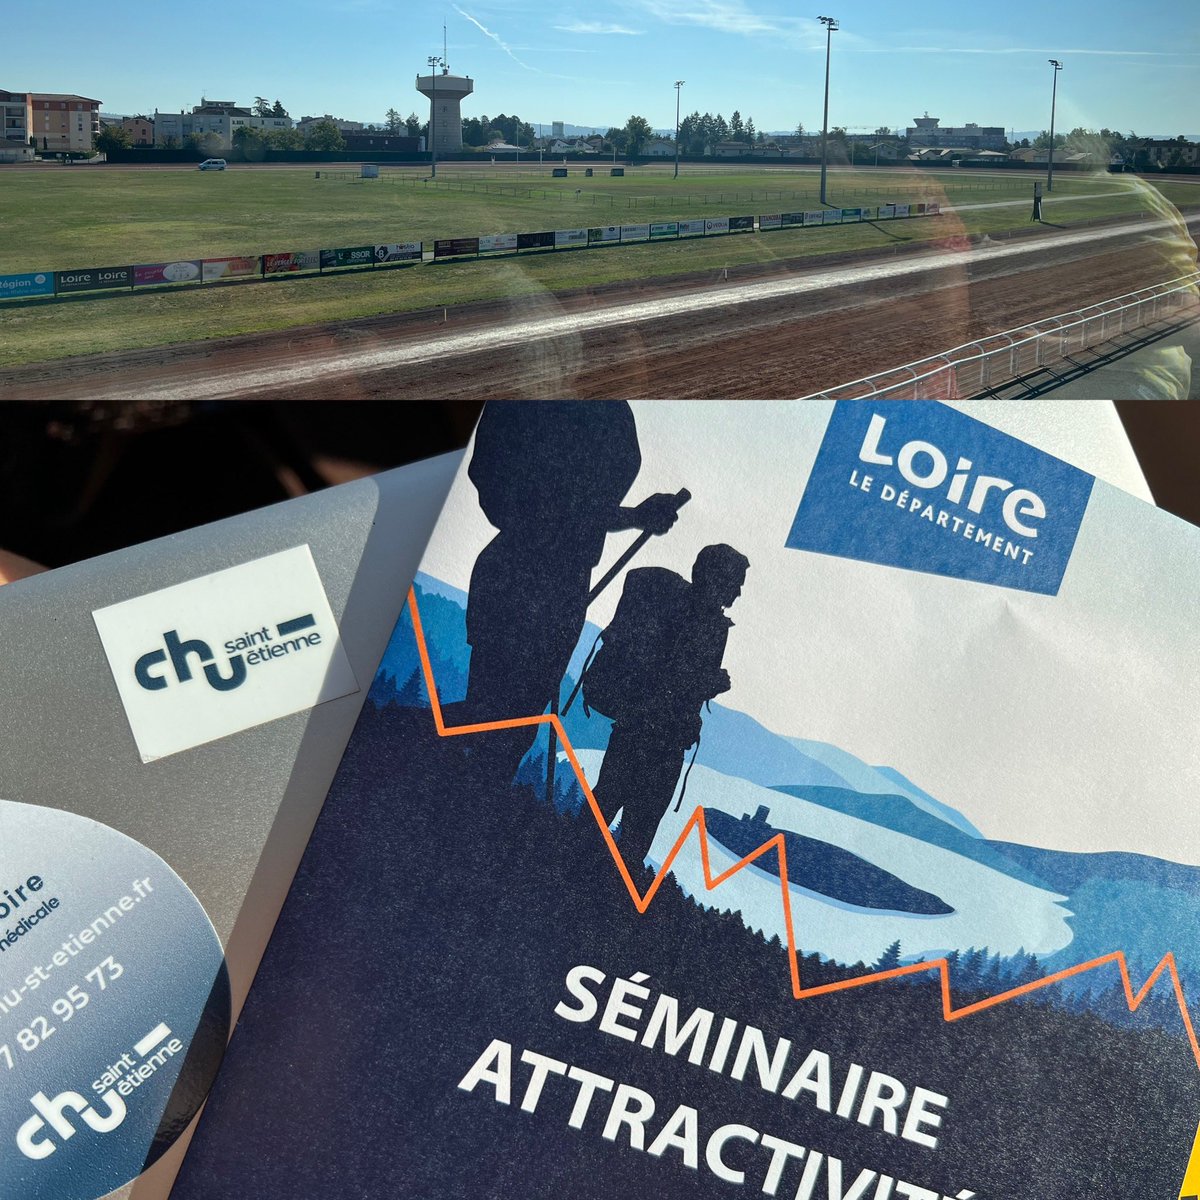 🌟Premier employeur de la Loire, le @ChuSaintEtienne est engagé pour renforcer l’attractivité du département de la Loire.
 🙏🏻 @Dep_Loire42 pour l’organisation de ce séminaire d’attractivité 

#superchu 🏨
#superdepartement🏞⛰🚲